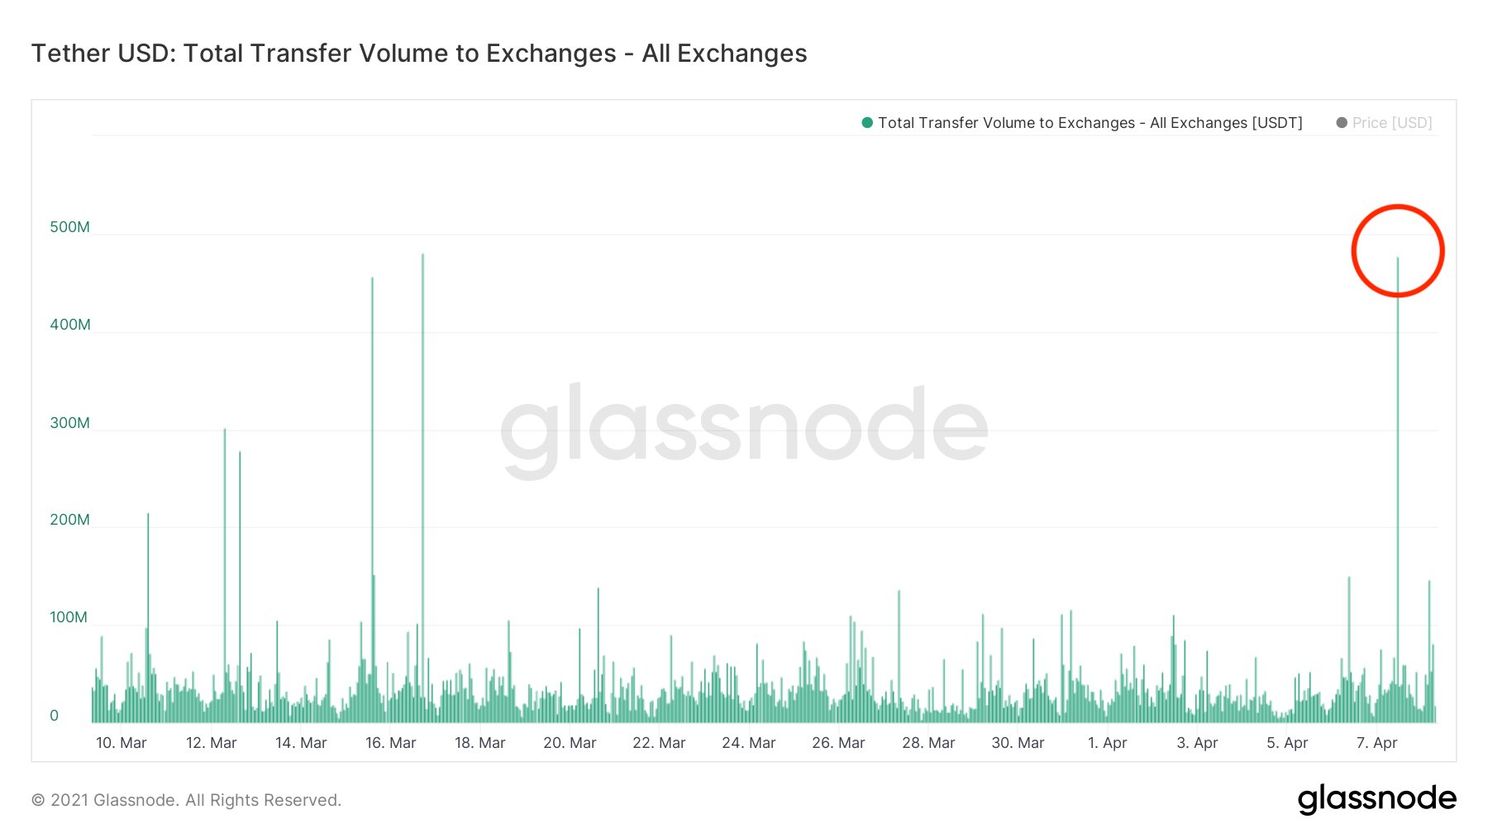 Bitcoin dip opgekocht: In 1 uur $476 miljoen aan Tether richting beurzen